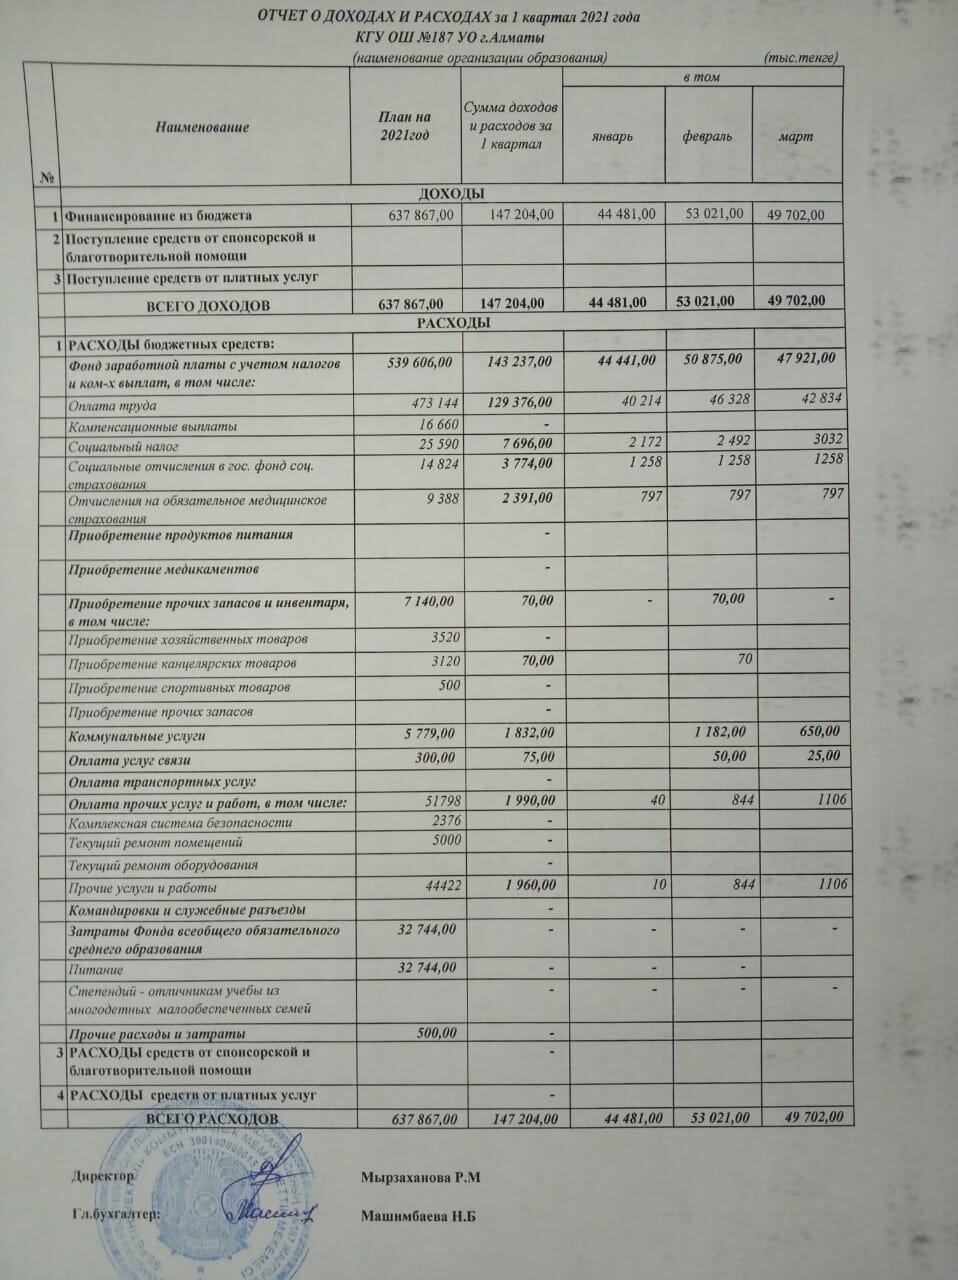 Отчет о доходах и расходах за 1 квартал 2021 года и пояснительная записка